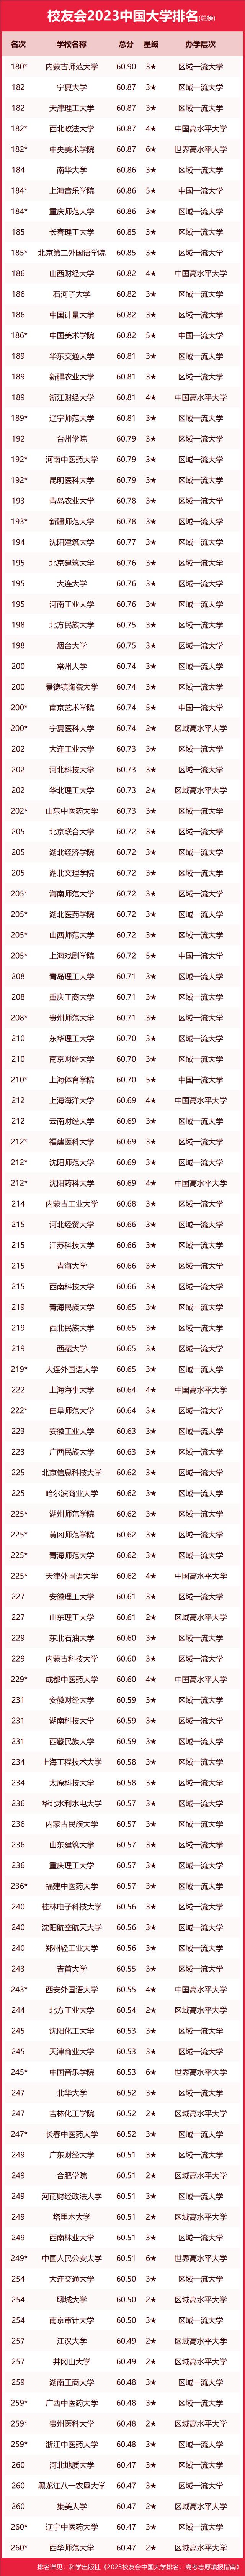 最新！2023校友会中国大学排名完整榜单